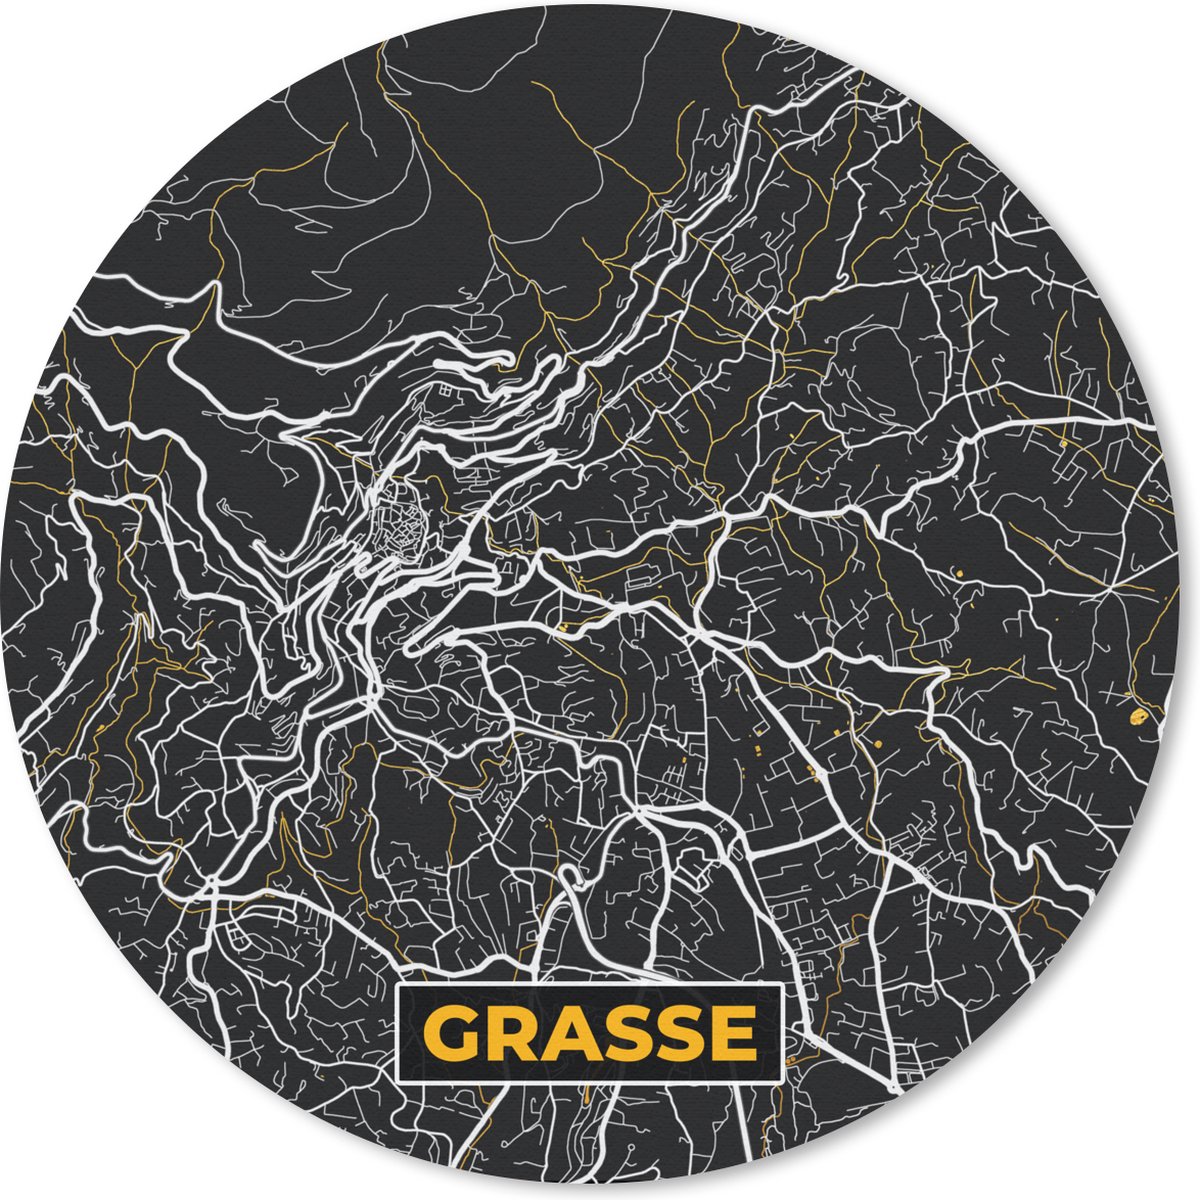 Muismat - Mousepad - Rond - Grasse - Plattegrond - Frankrijk - Kaart - Stadskaart - 40x40 cm - Ronde muismat